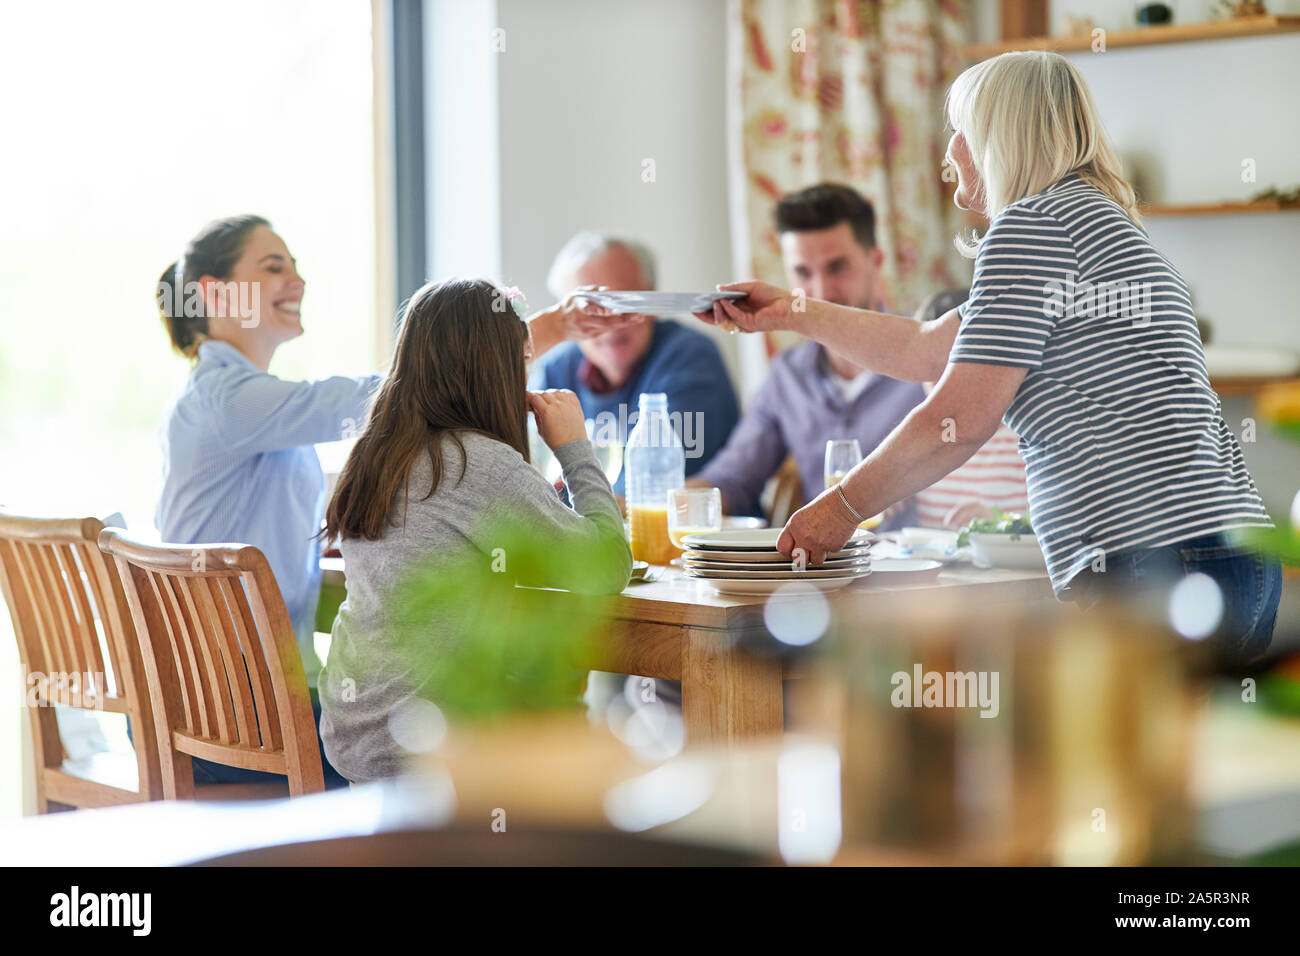 Glückliche Familie am Esstisch mit Mittag- oder Abendessen Stockfoto